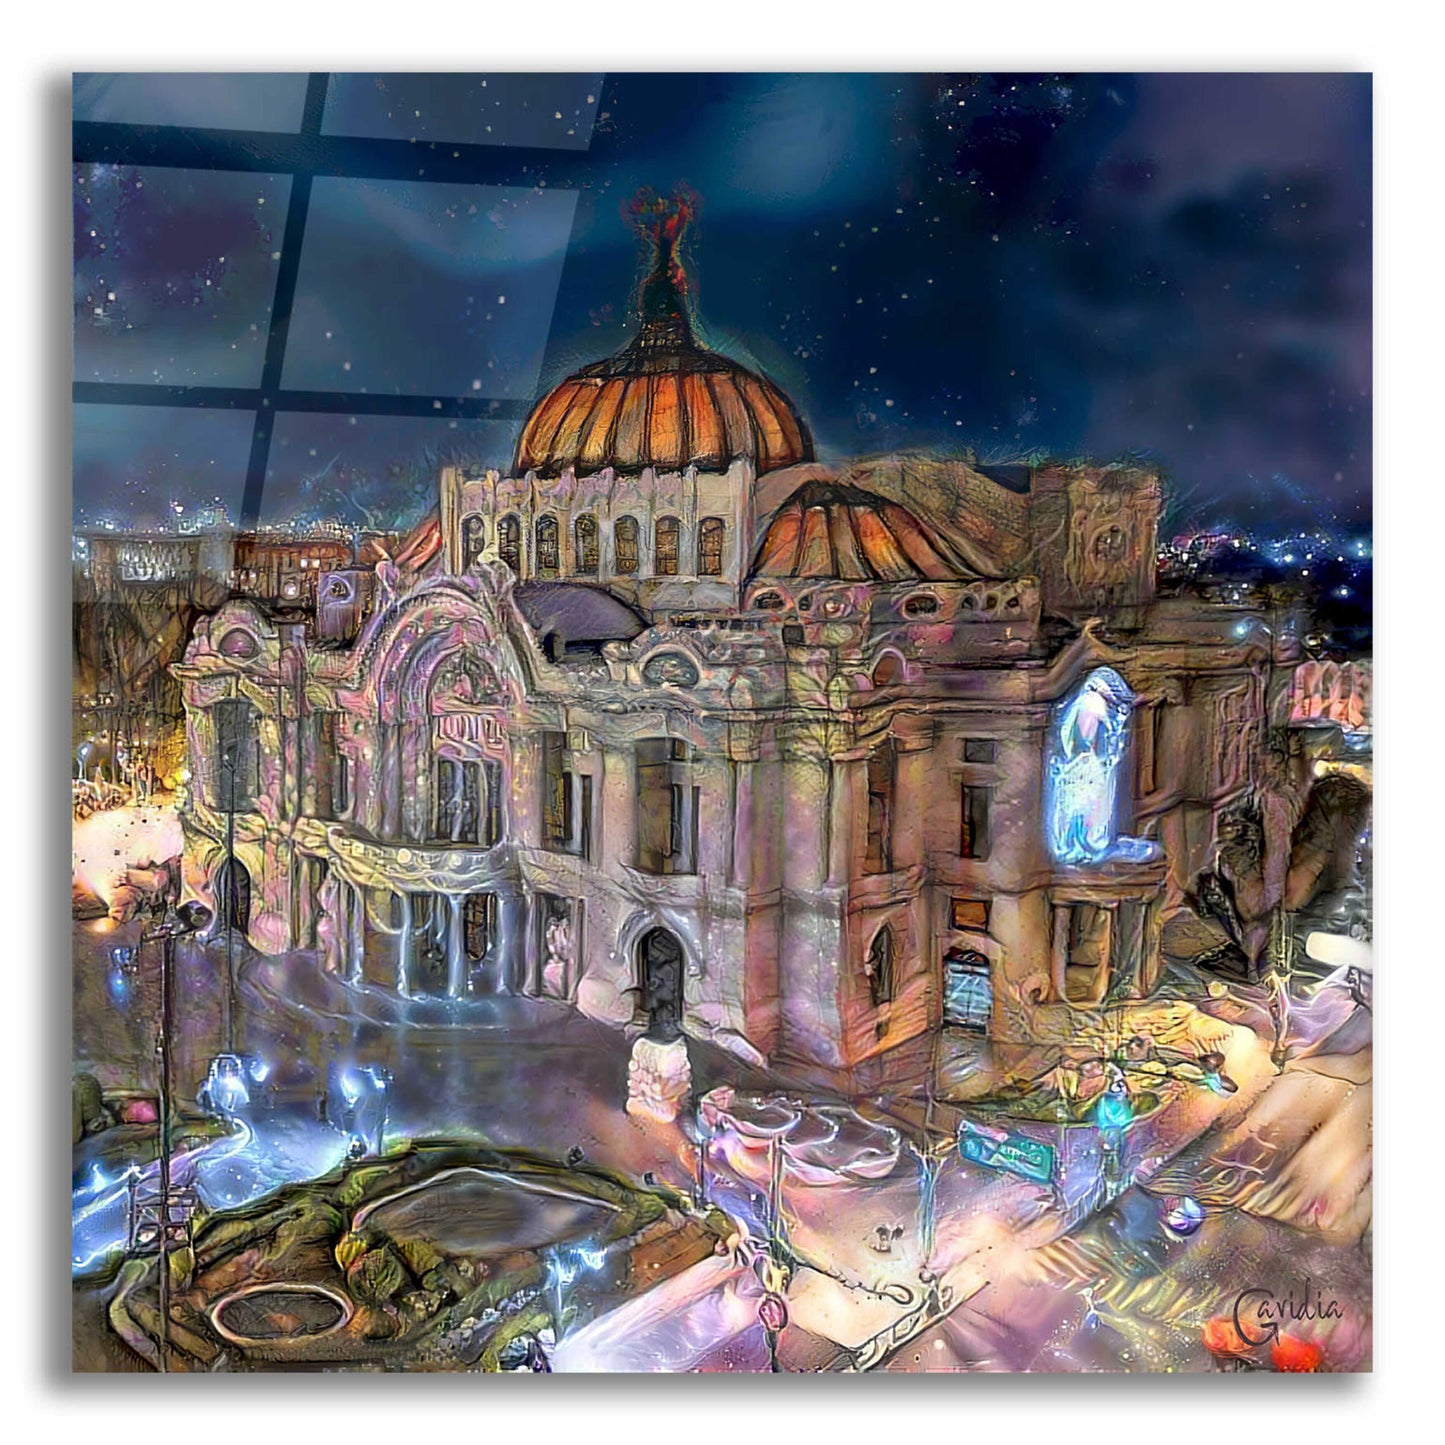 Epic Art 'Mexico City Palace of Fine Arts at night' by Pedro Gavidia, Acrylic Glass Wall Art,12x12